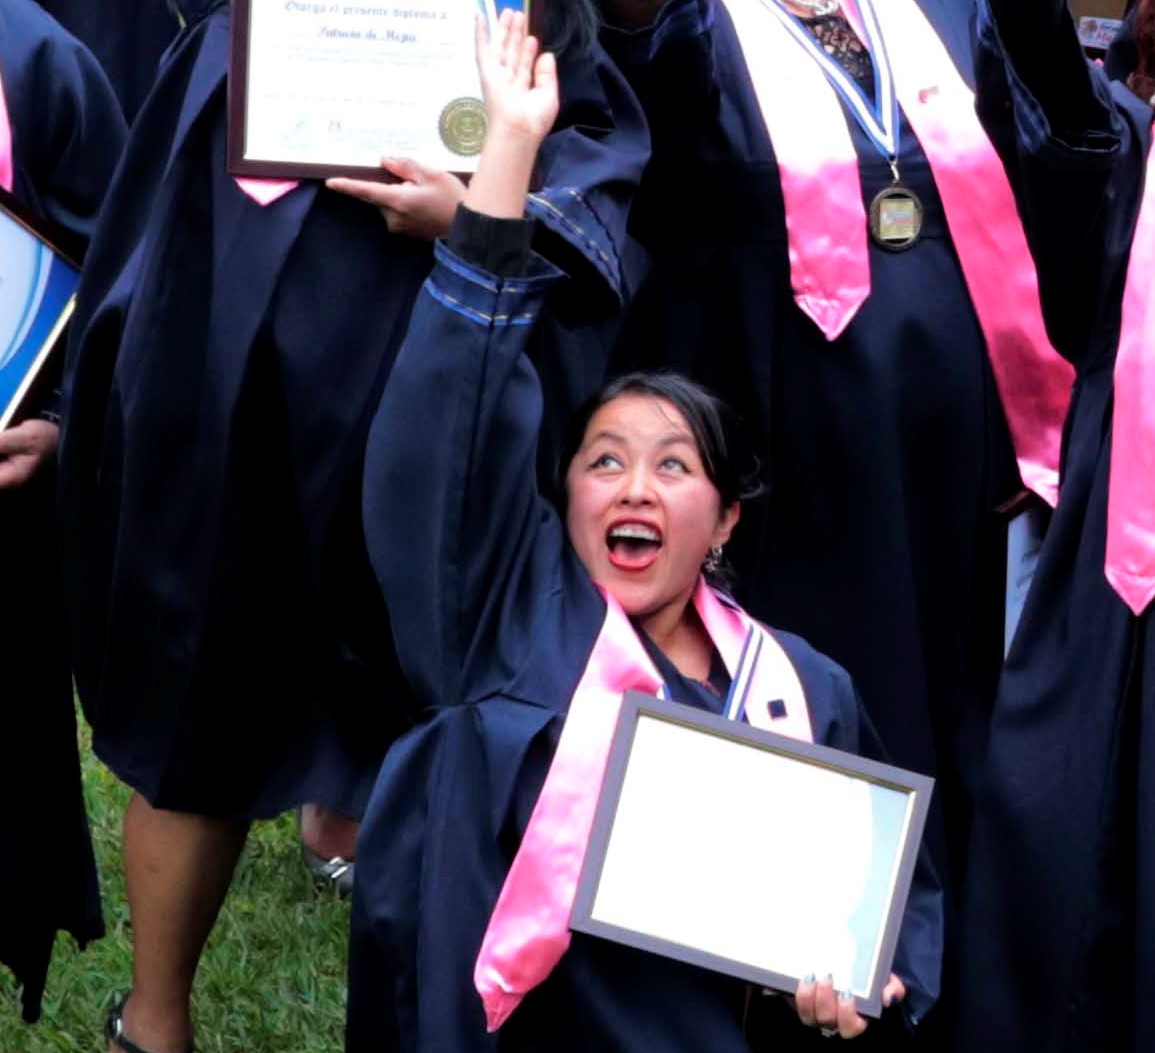 Una de las 25 mujeres que se graduaron muestra su reconocimiento (Foto Prensa Libre: Eduardo Sam Chun)